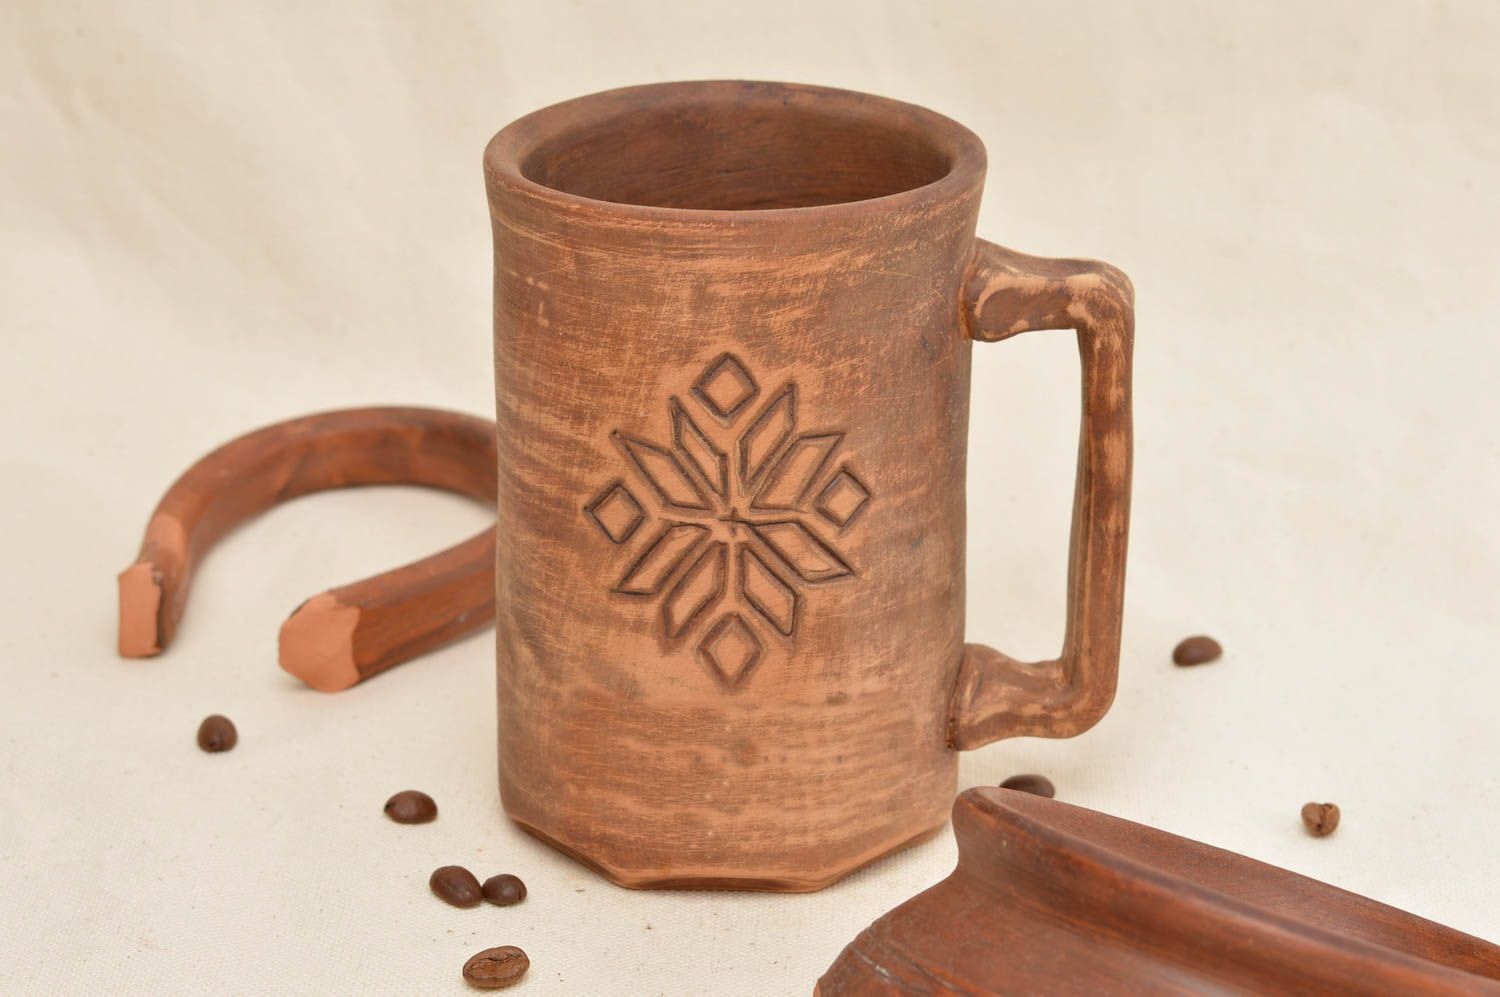 Глиняная чашка оригинальная кружка ручной работы с тиснением ромбиками фото 1